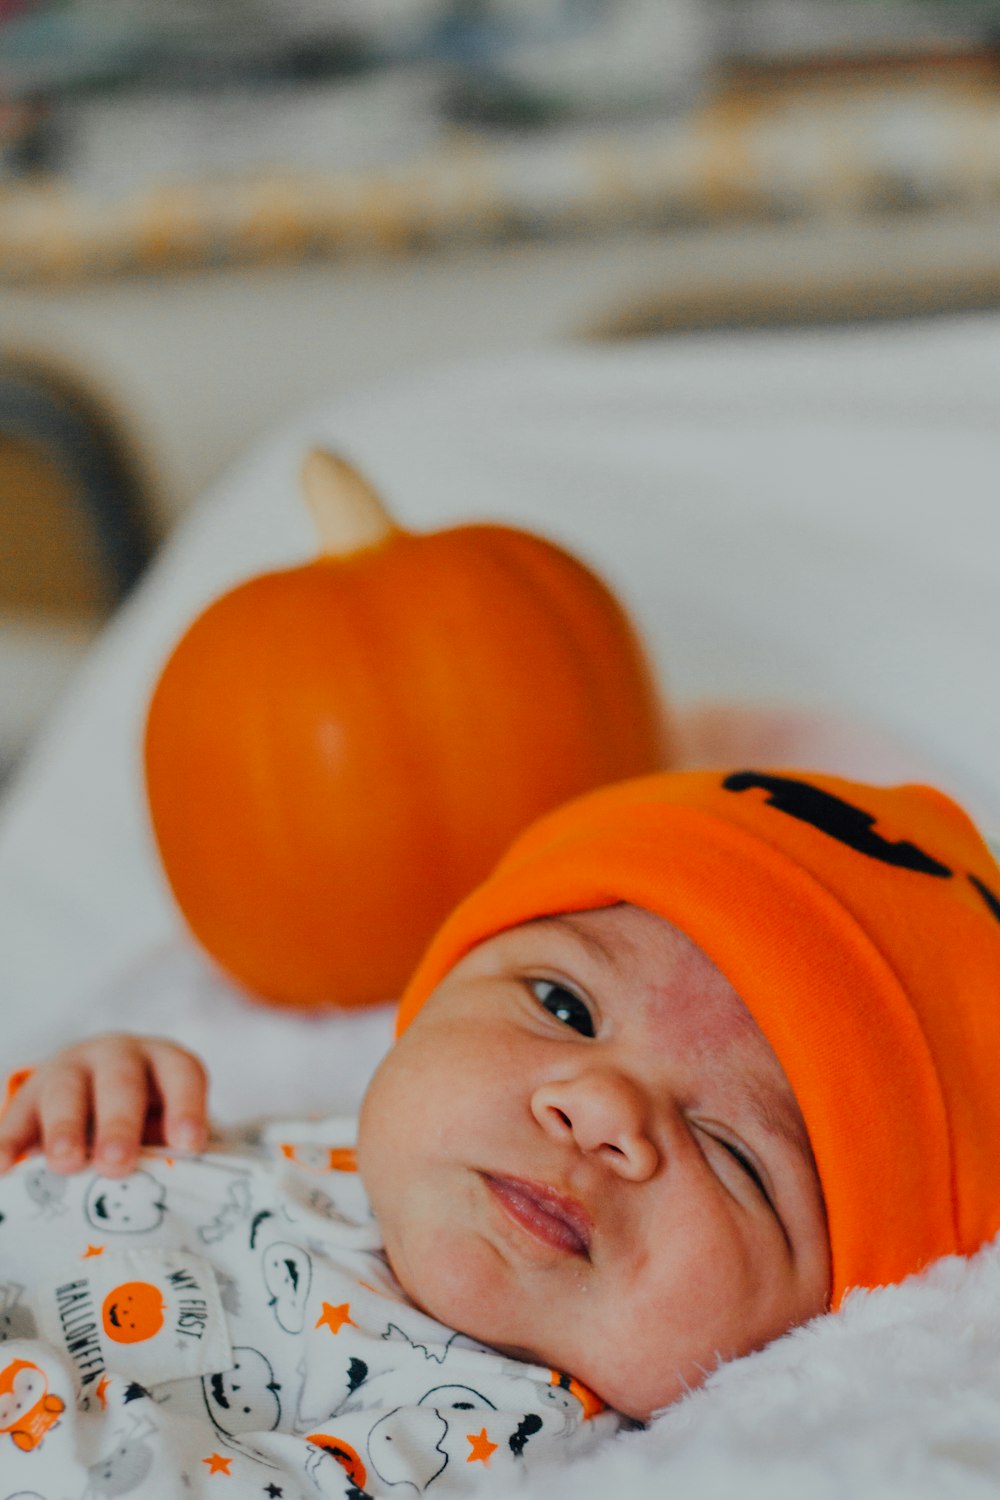 オレンジ色のニット帽をかぶった赤ちゃん